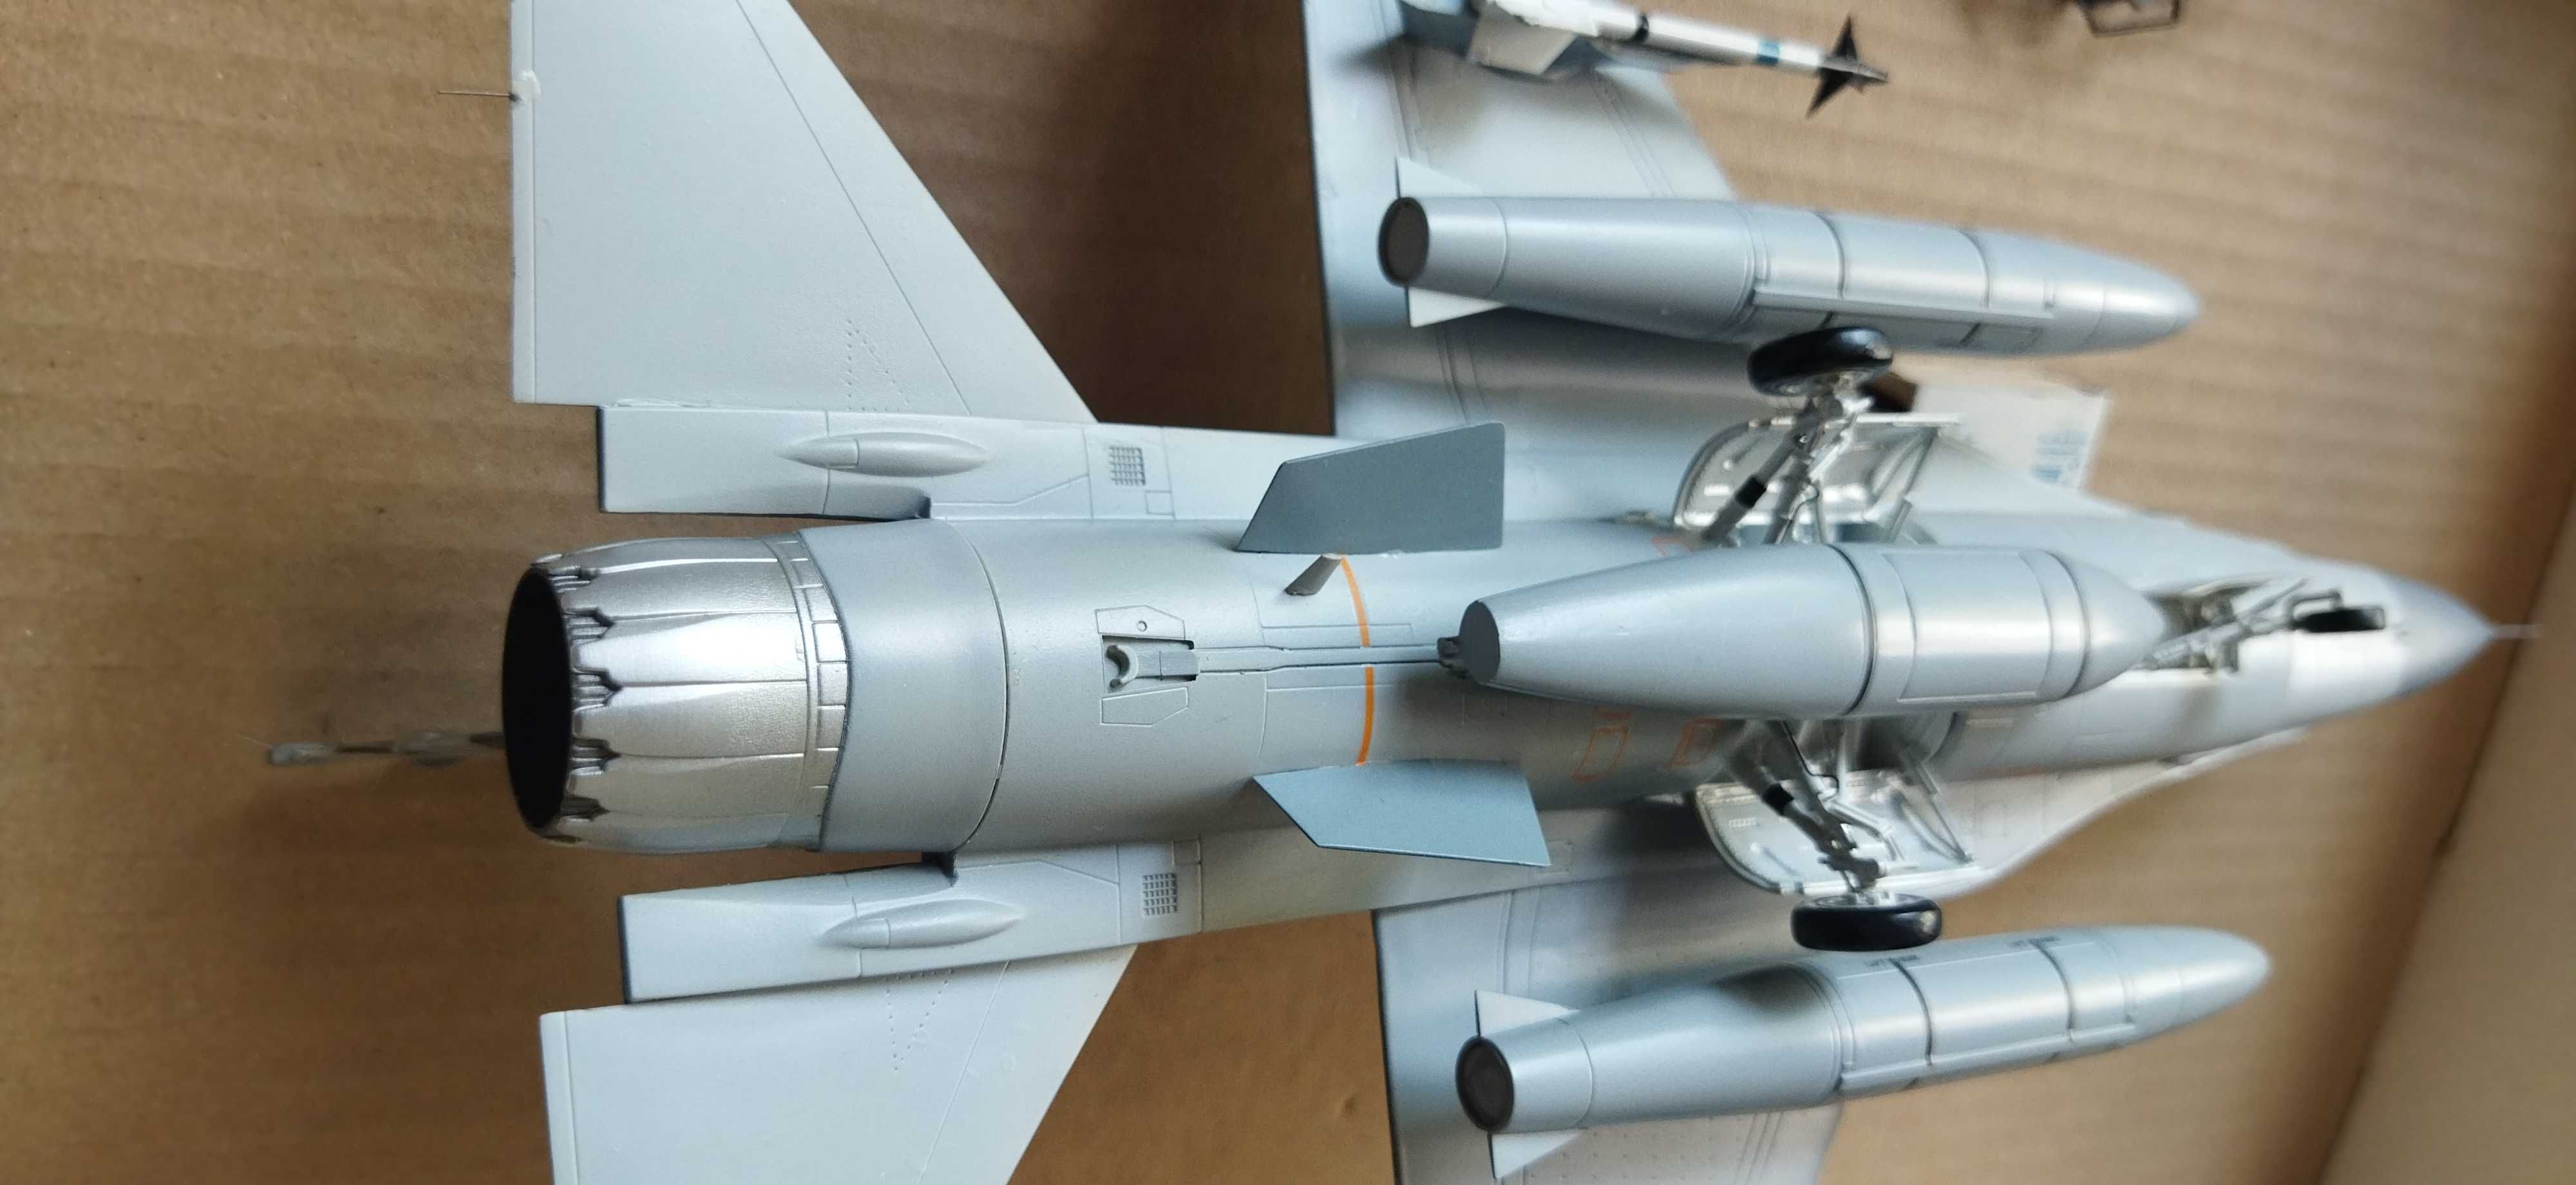 модель самолёта F-16C 1/48 Tamiya Japan учебный макет